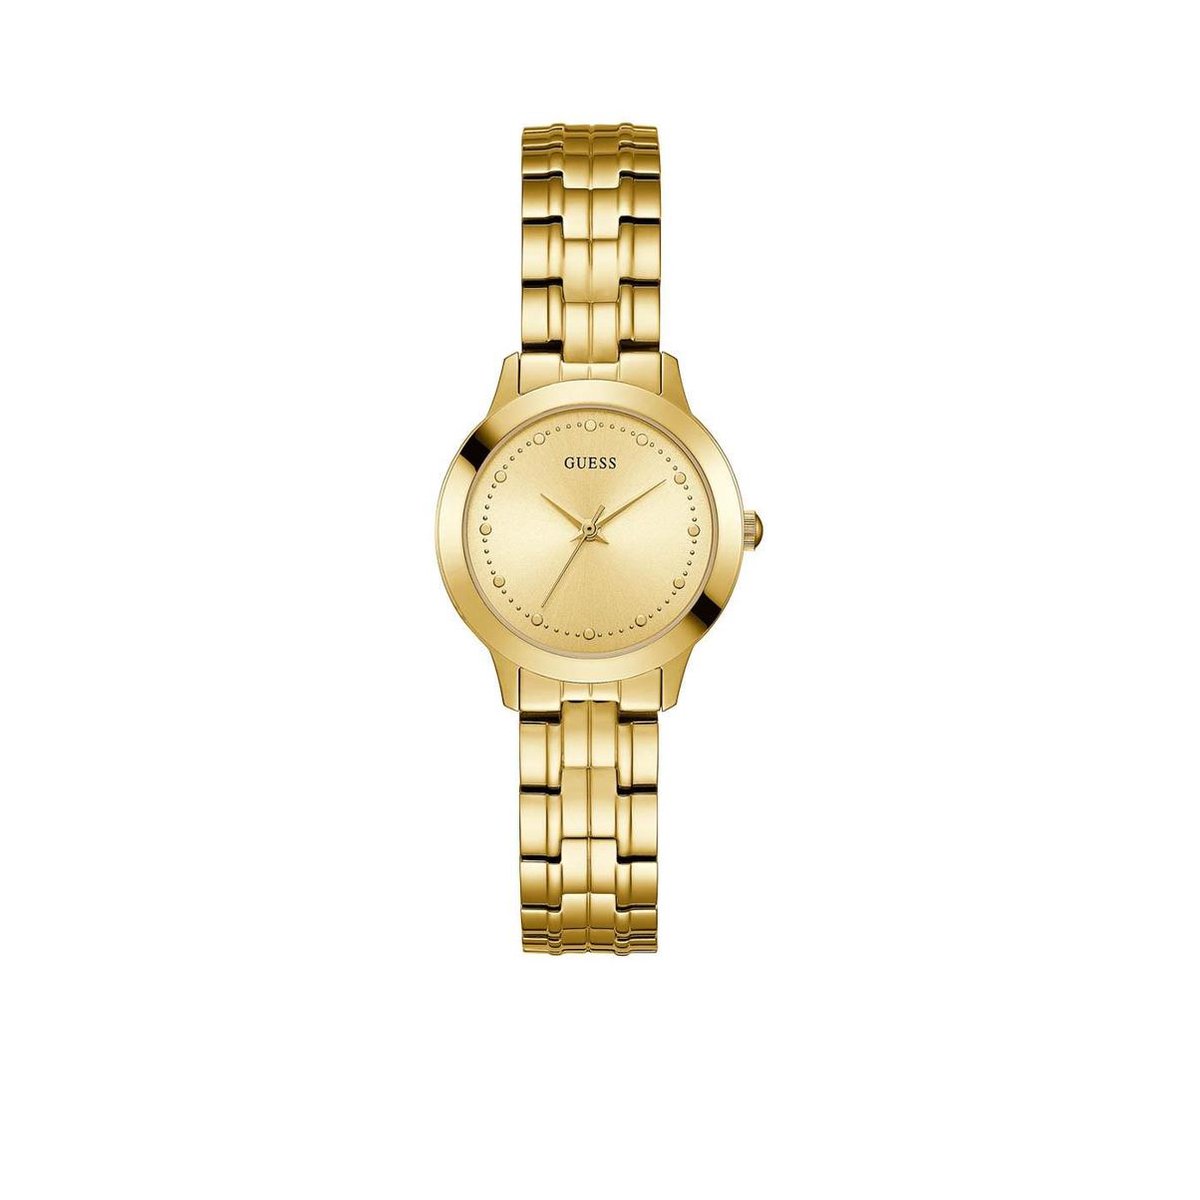 GUESS dames horloge 30 mm - Goudkleurig - GUESS